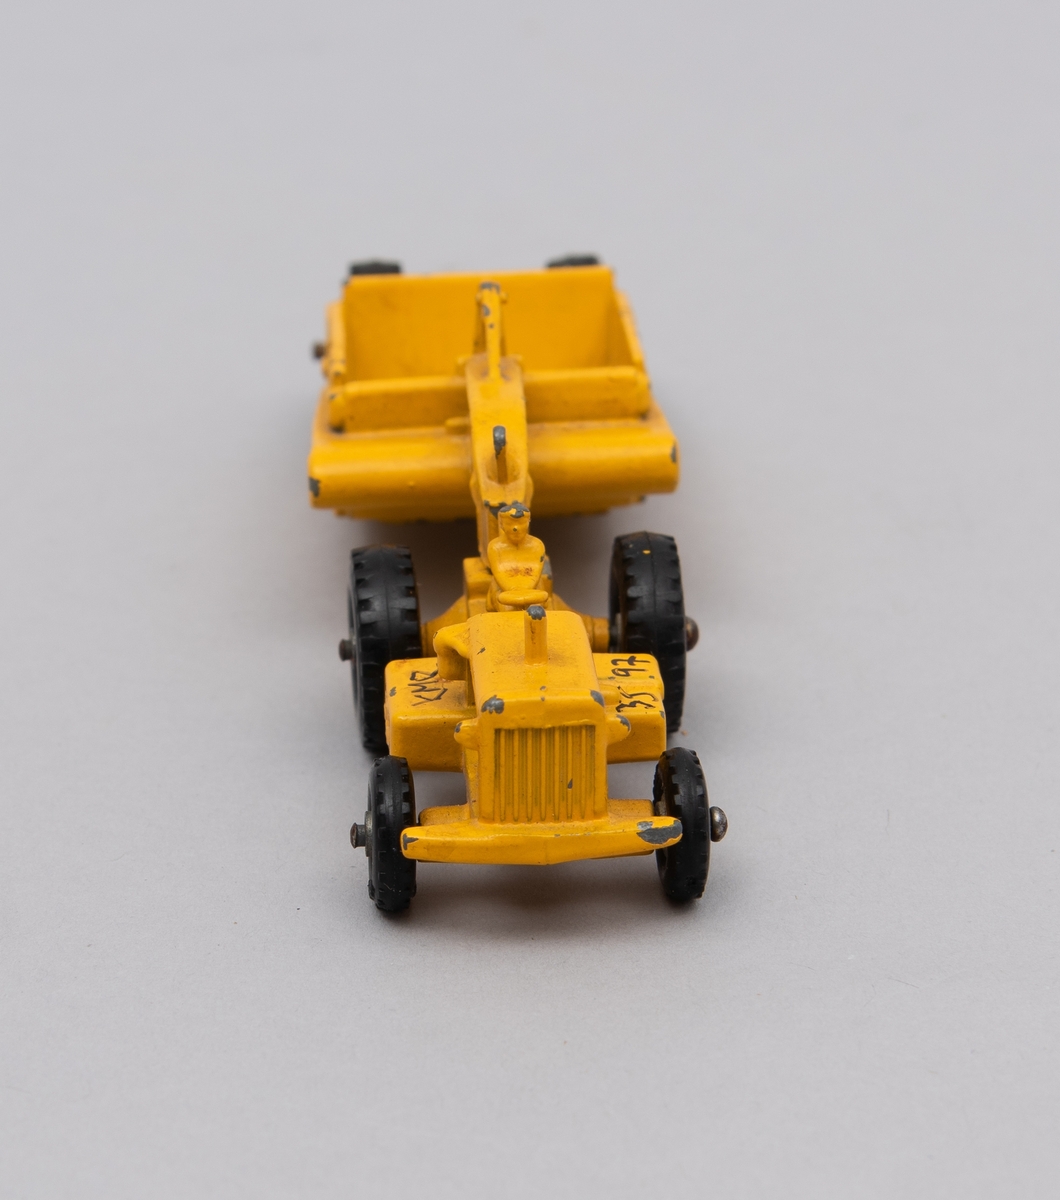 Gitt av Lisbeth Andreassen Chumak.
Traktor med henger. Begge i metall. De er gule og på traktoren sitter en mann/bonde.